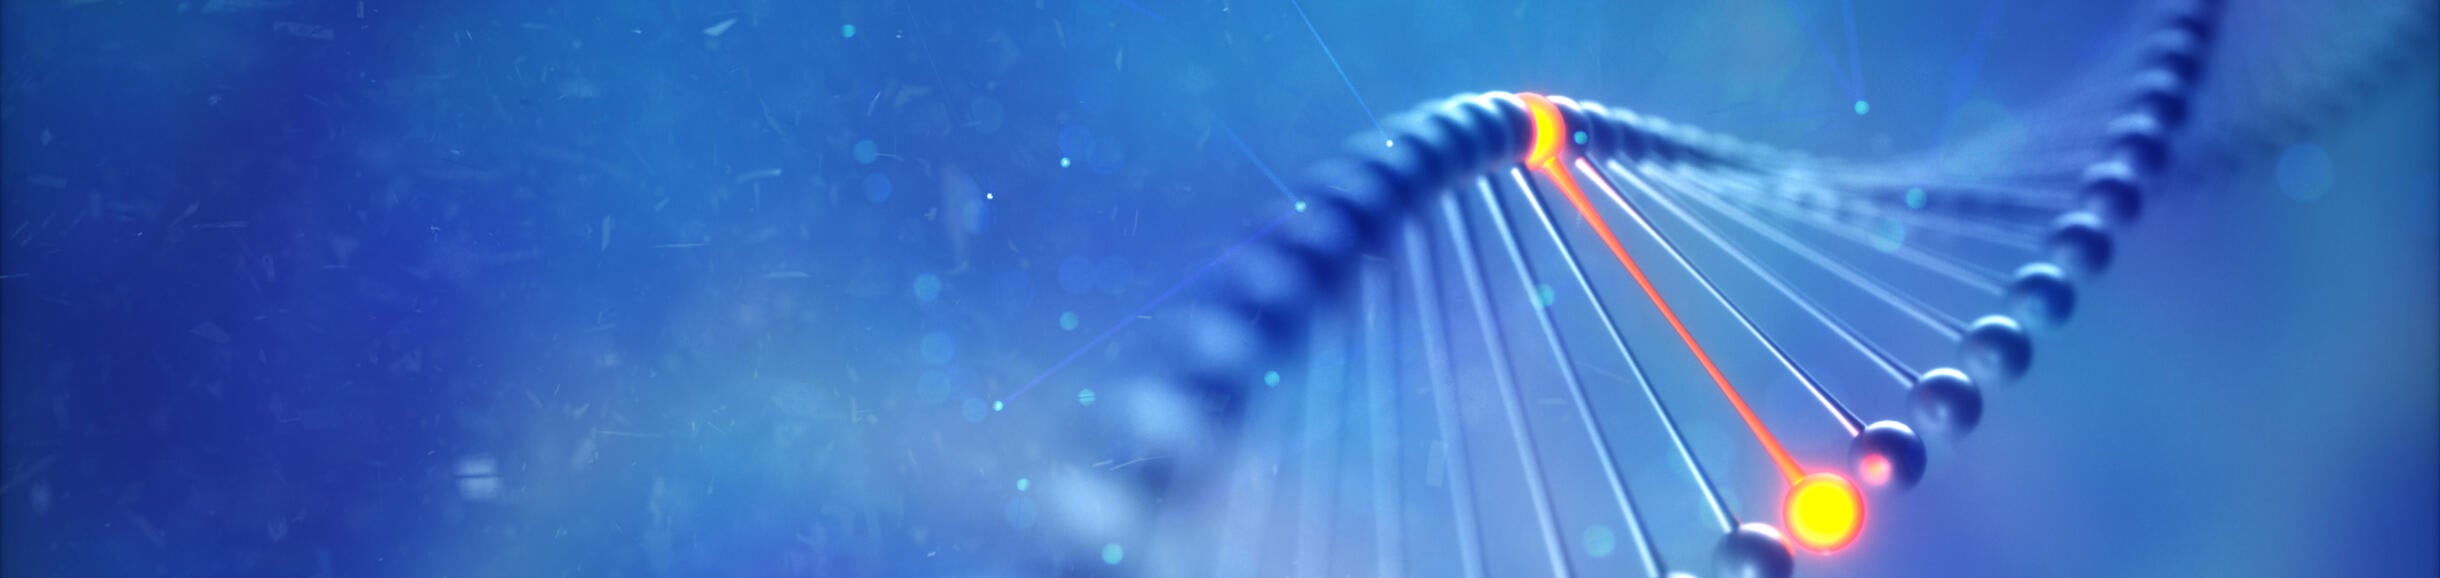 gene editing illustration